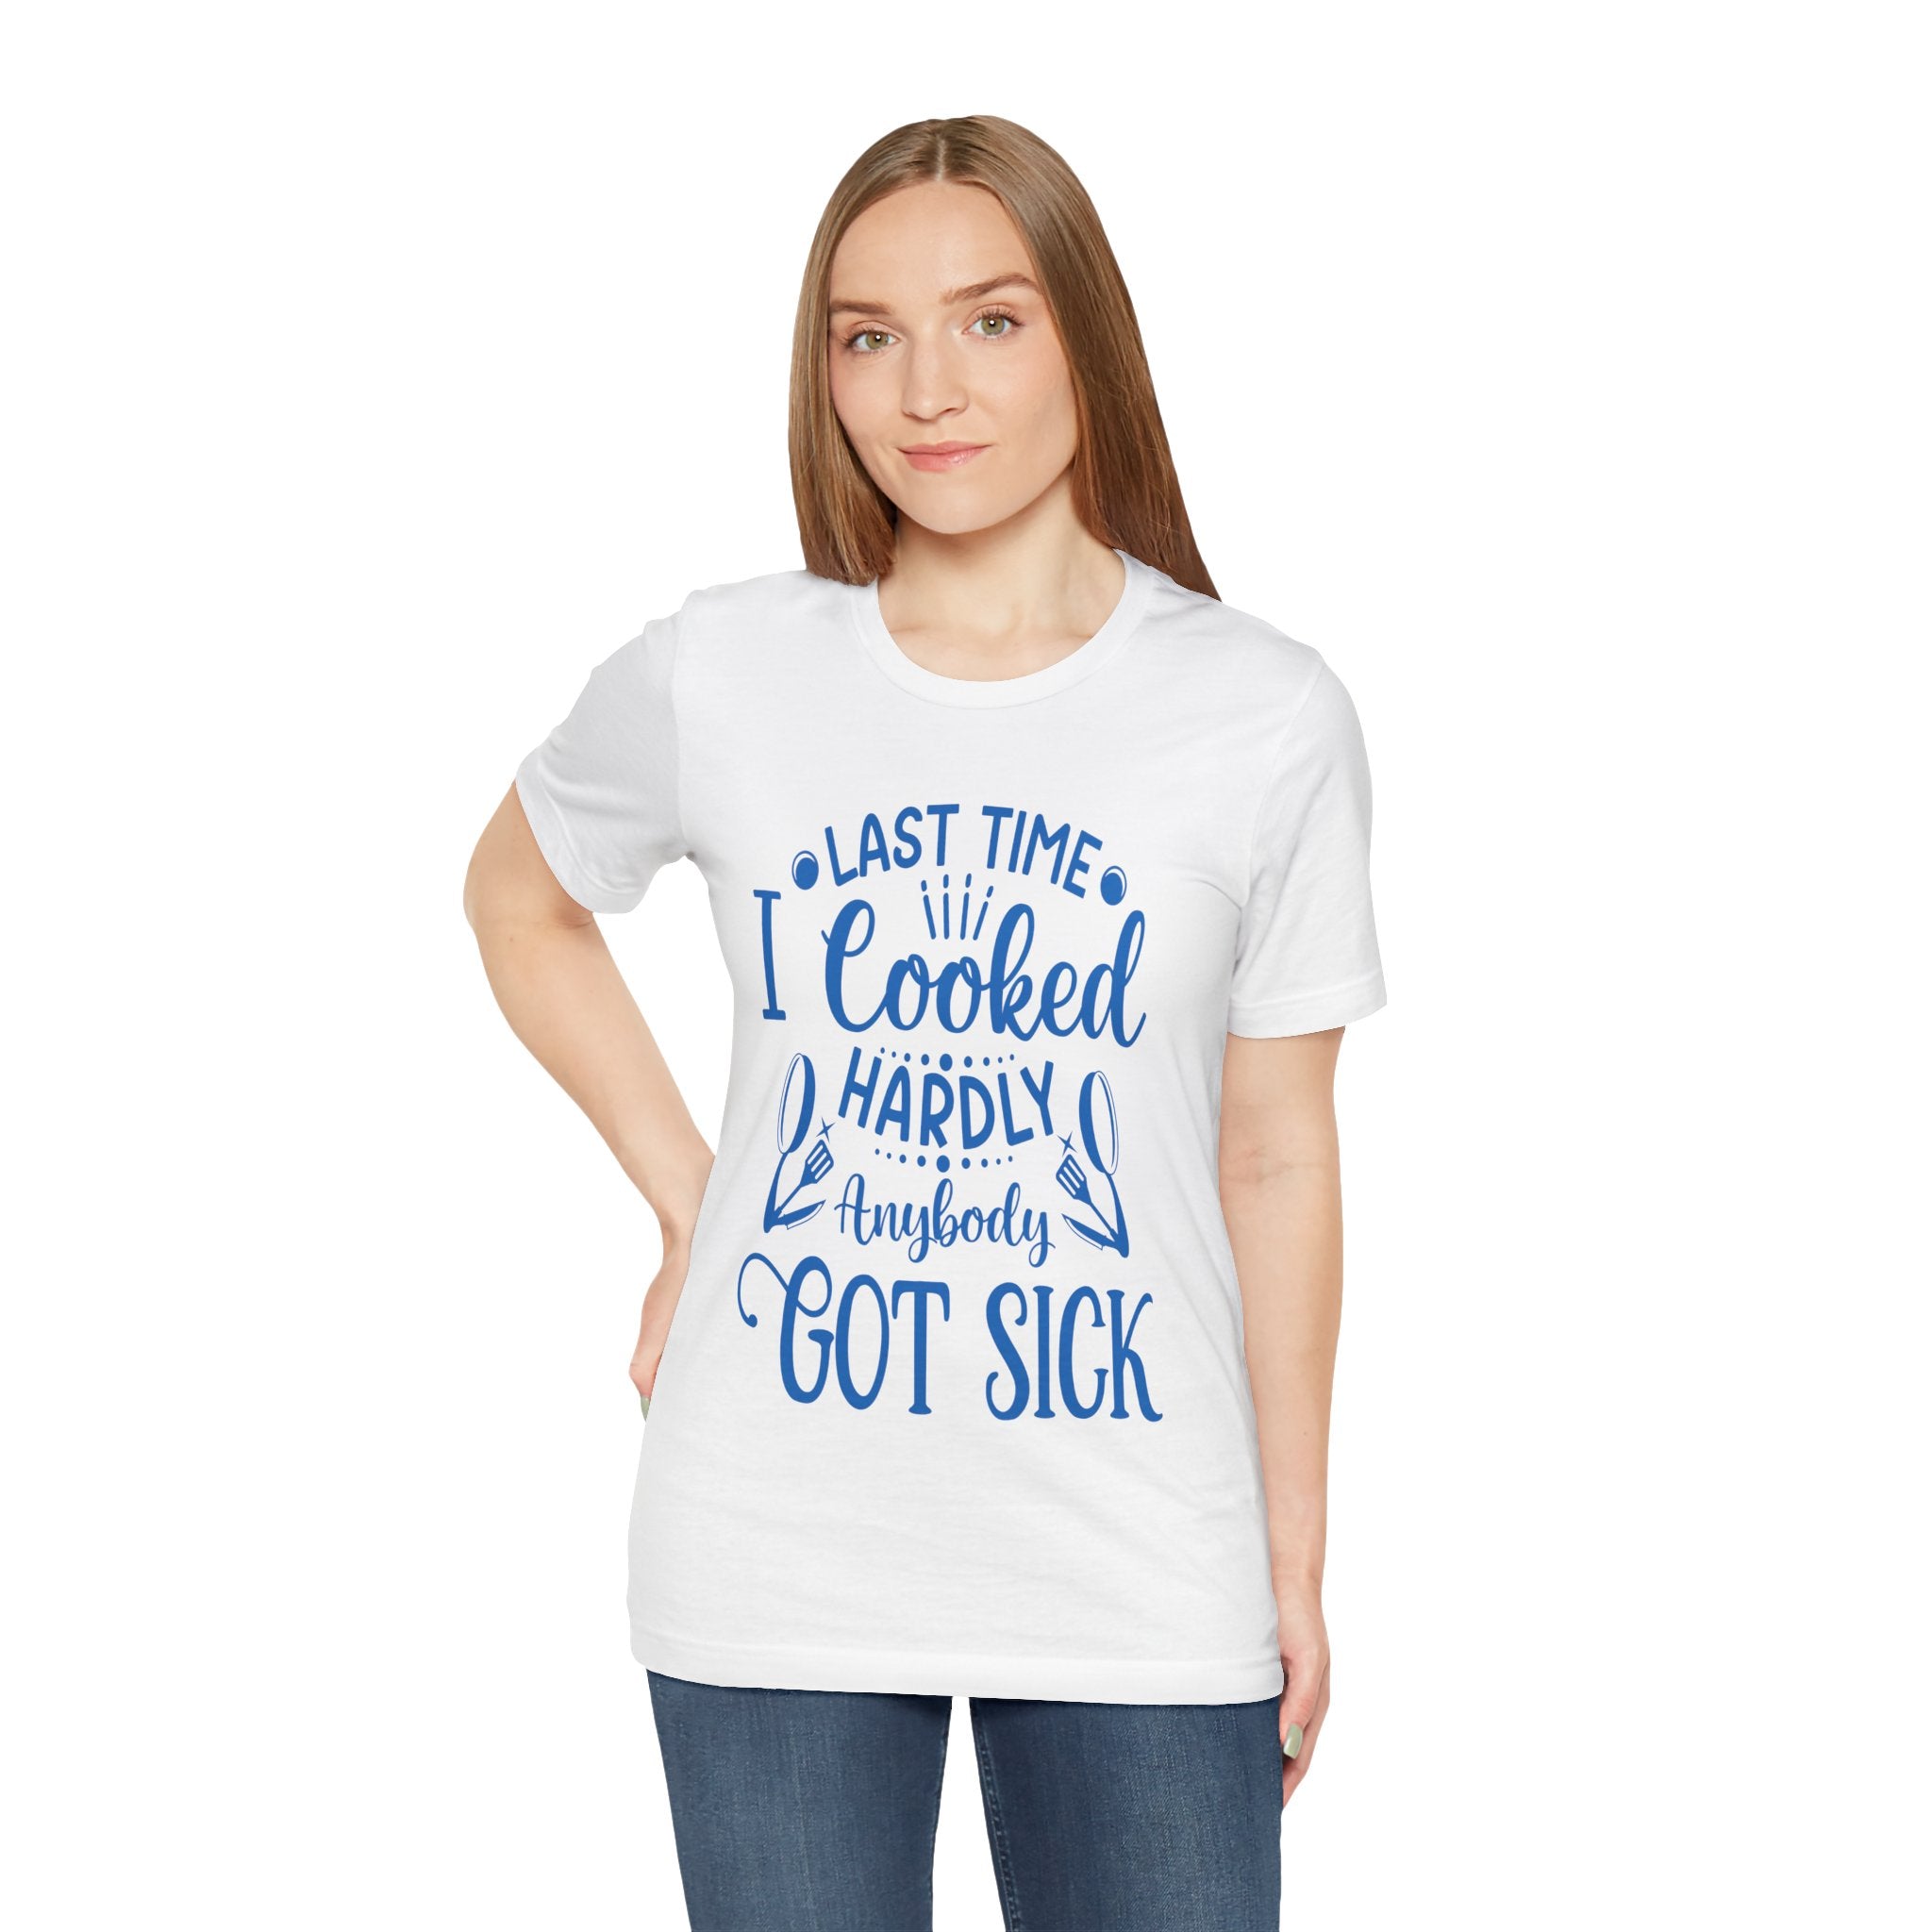 Cooking Expert Tee Shirt